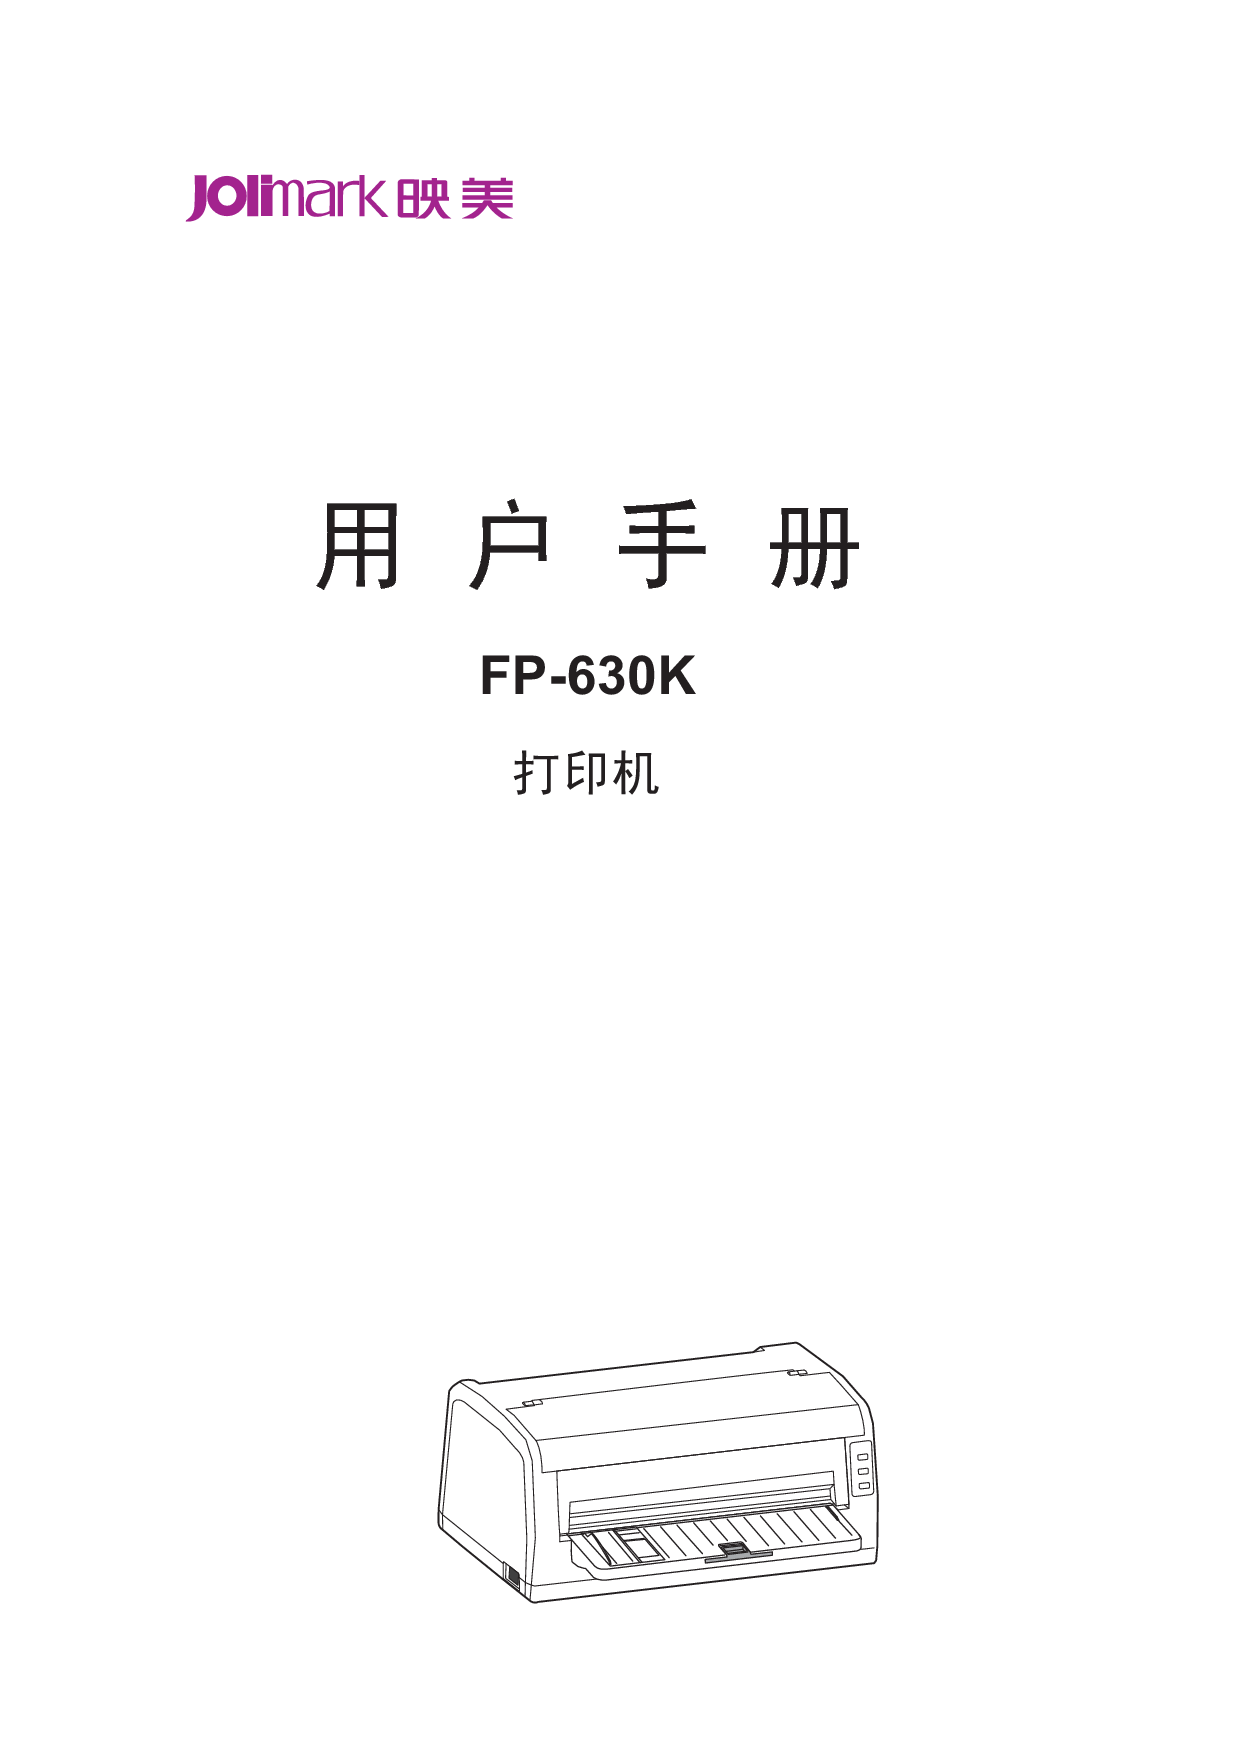 映美 Jolimark FP-630K 用户手册 封面